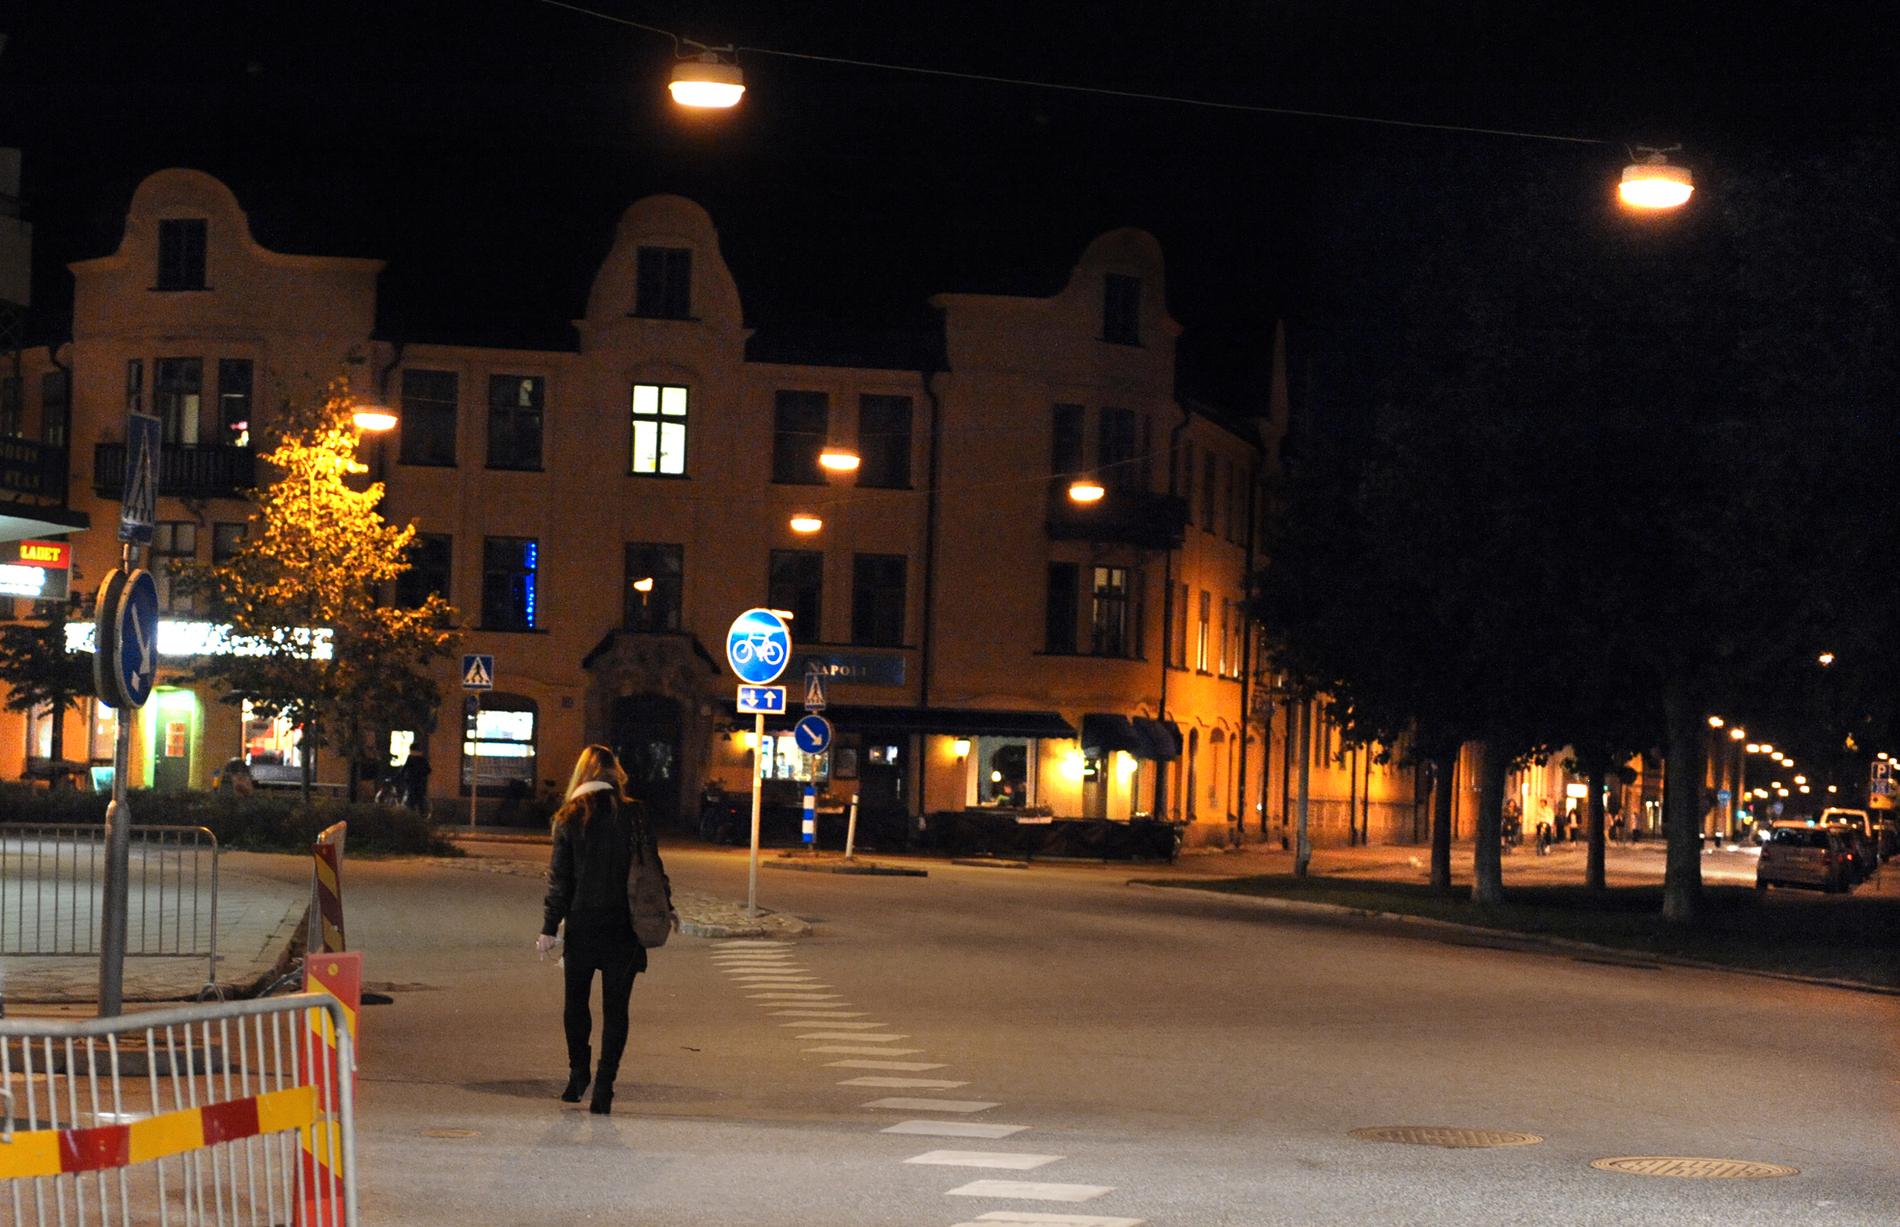 2009 begick ”Örebromannen” ett våldtäktsförsök på Ekersgatan i Örebro. 